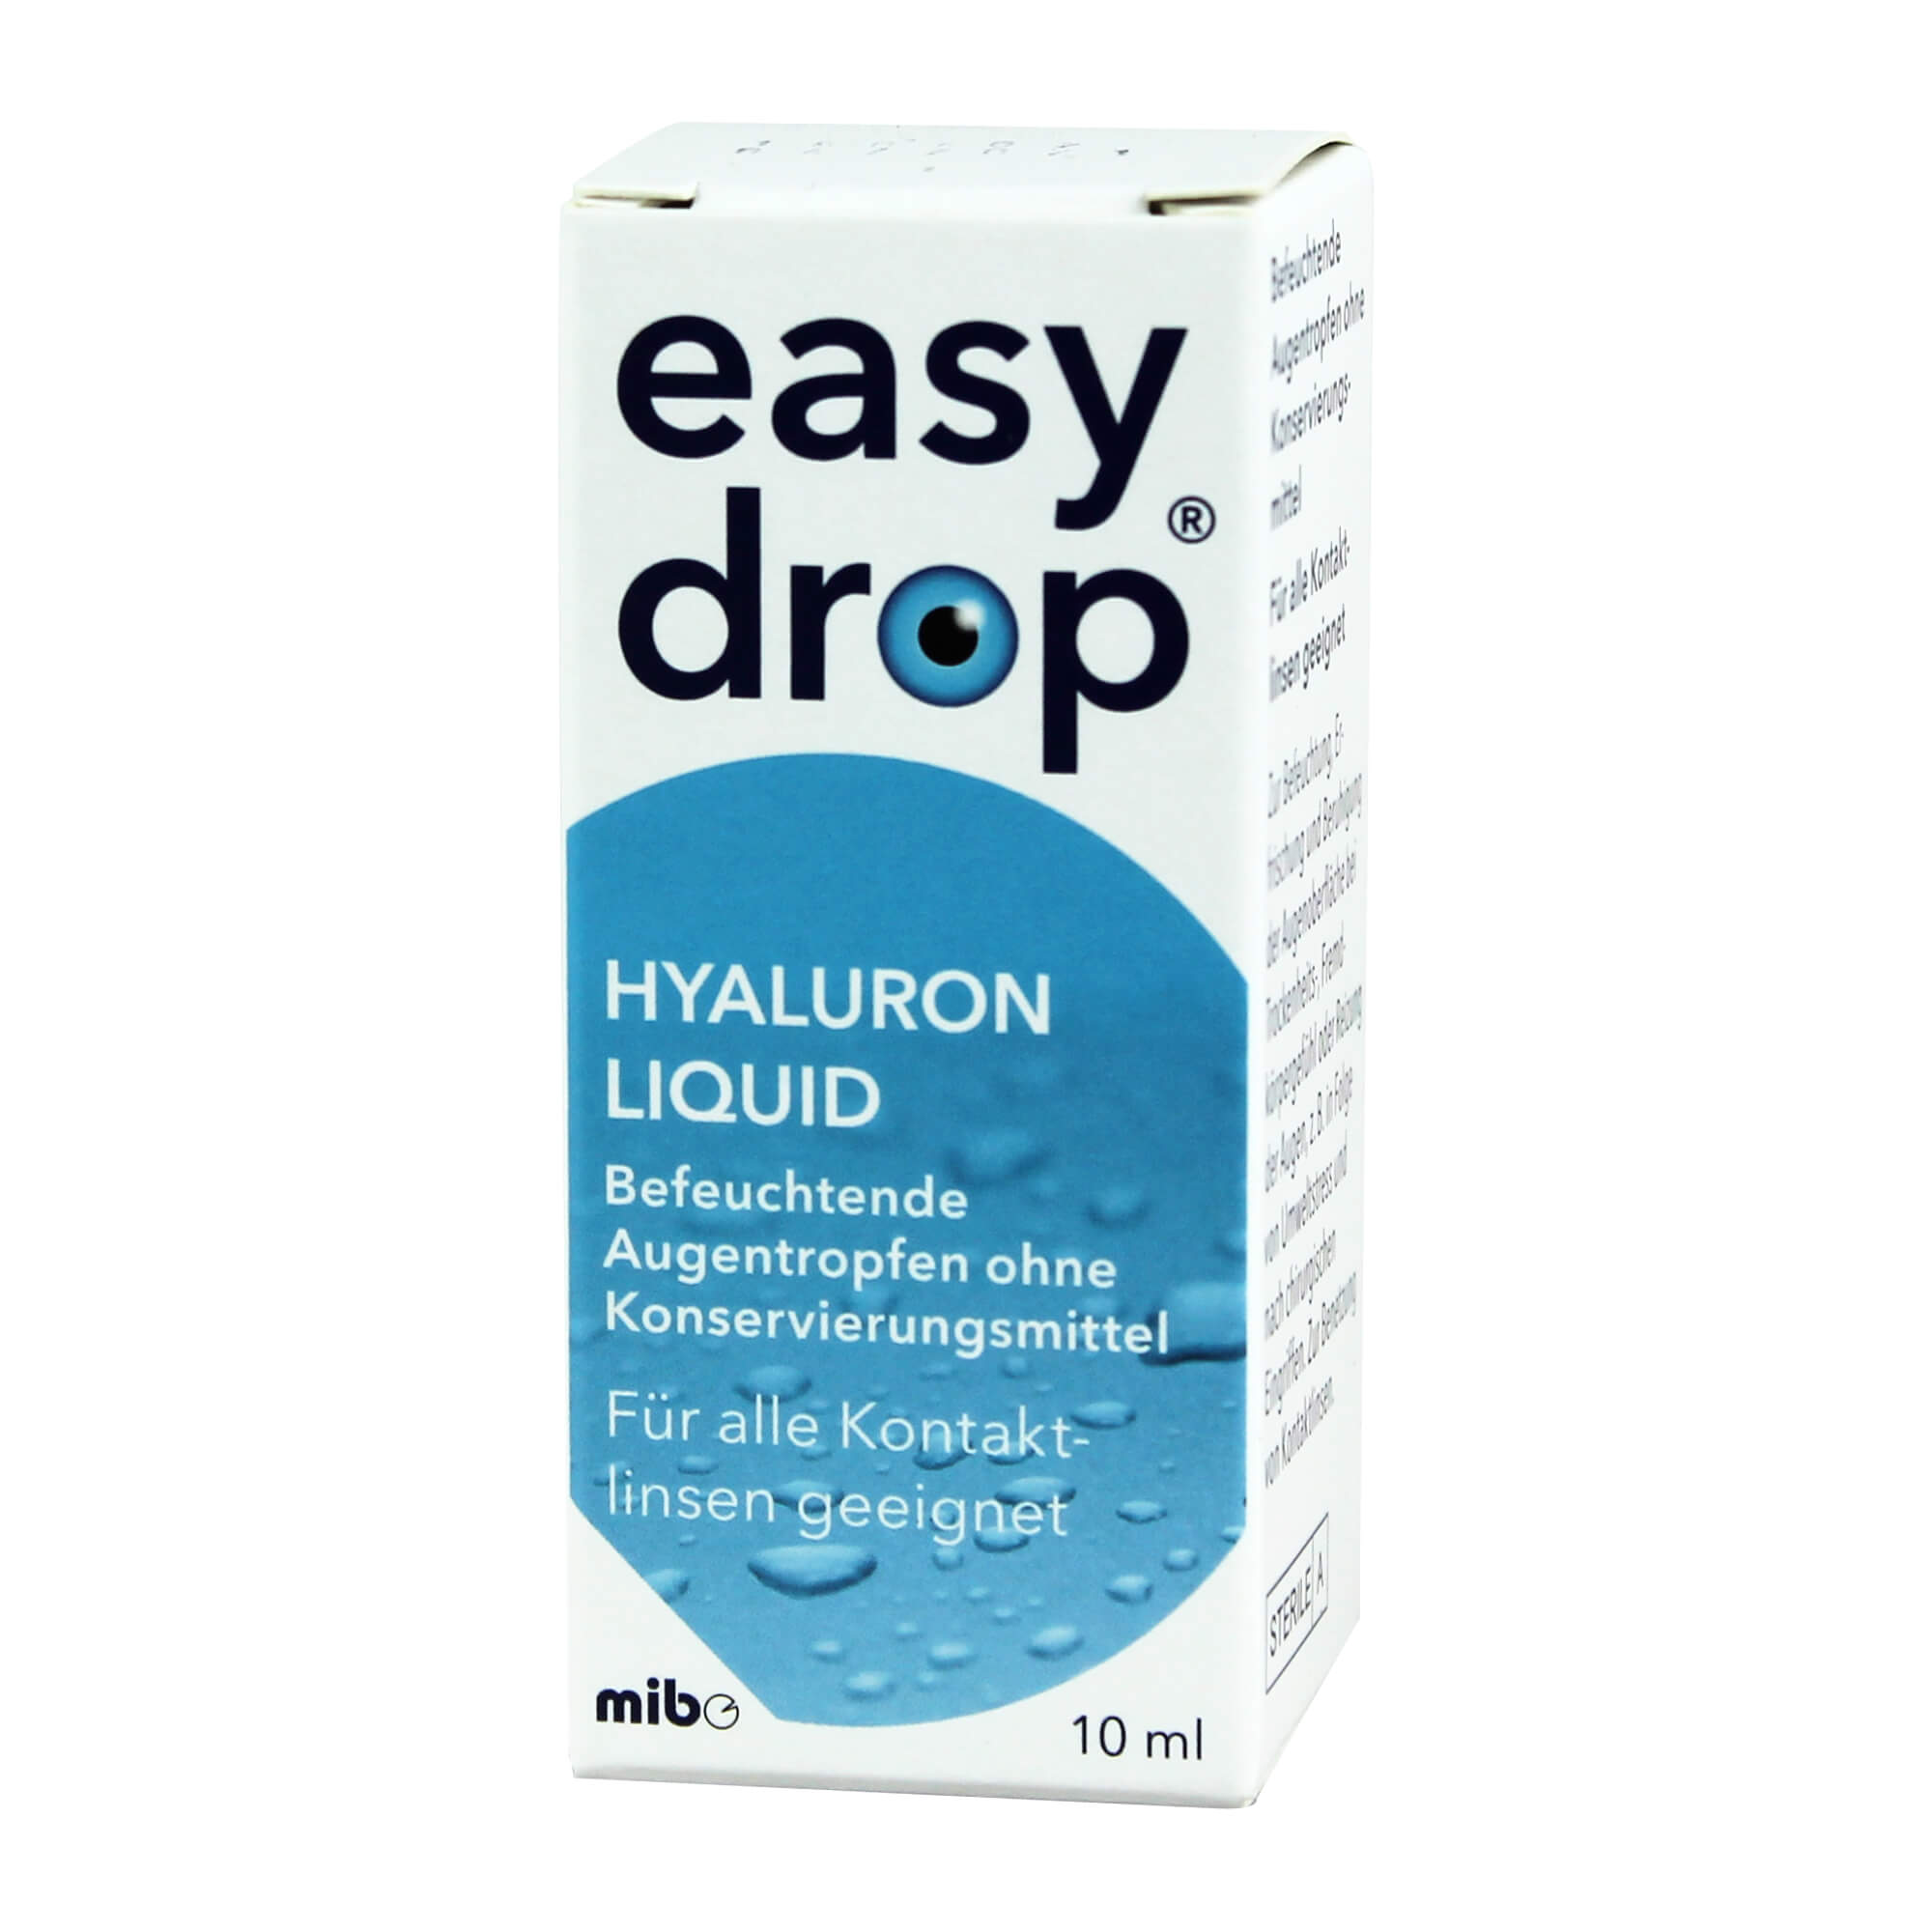 easydrop Hyaluron liquid Augentropfen